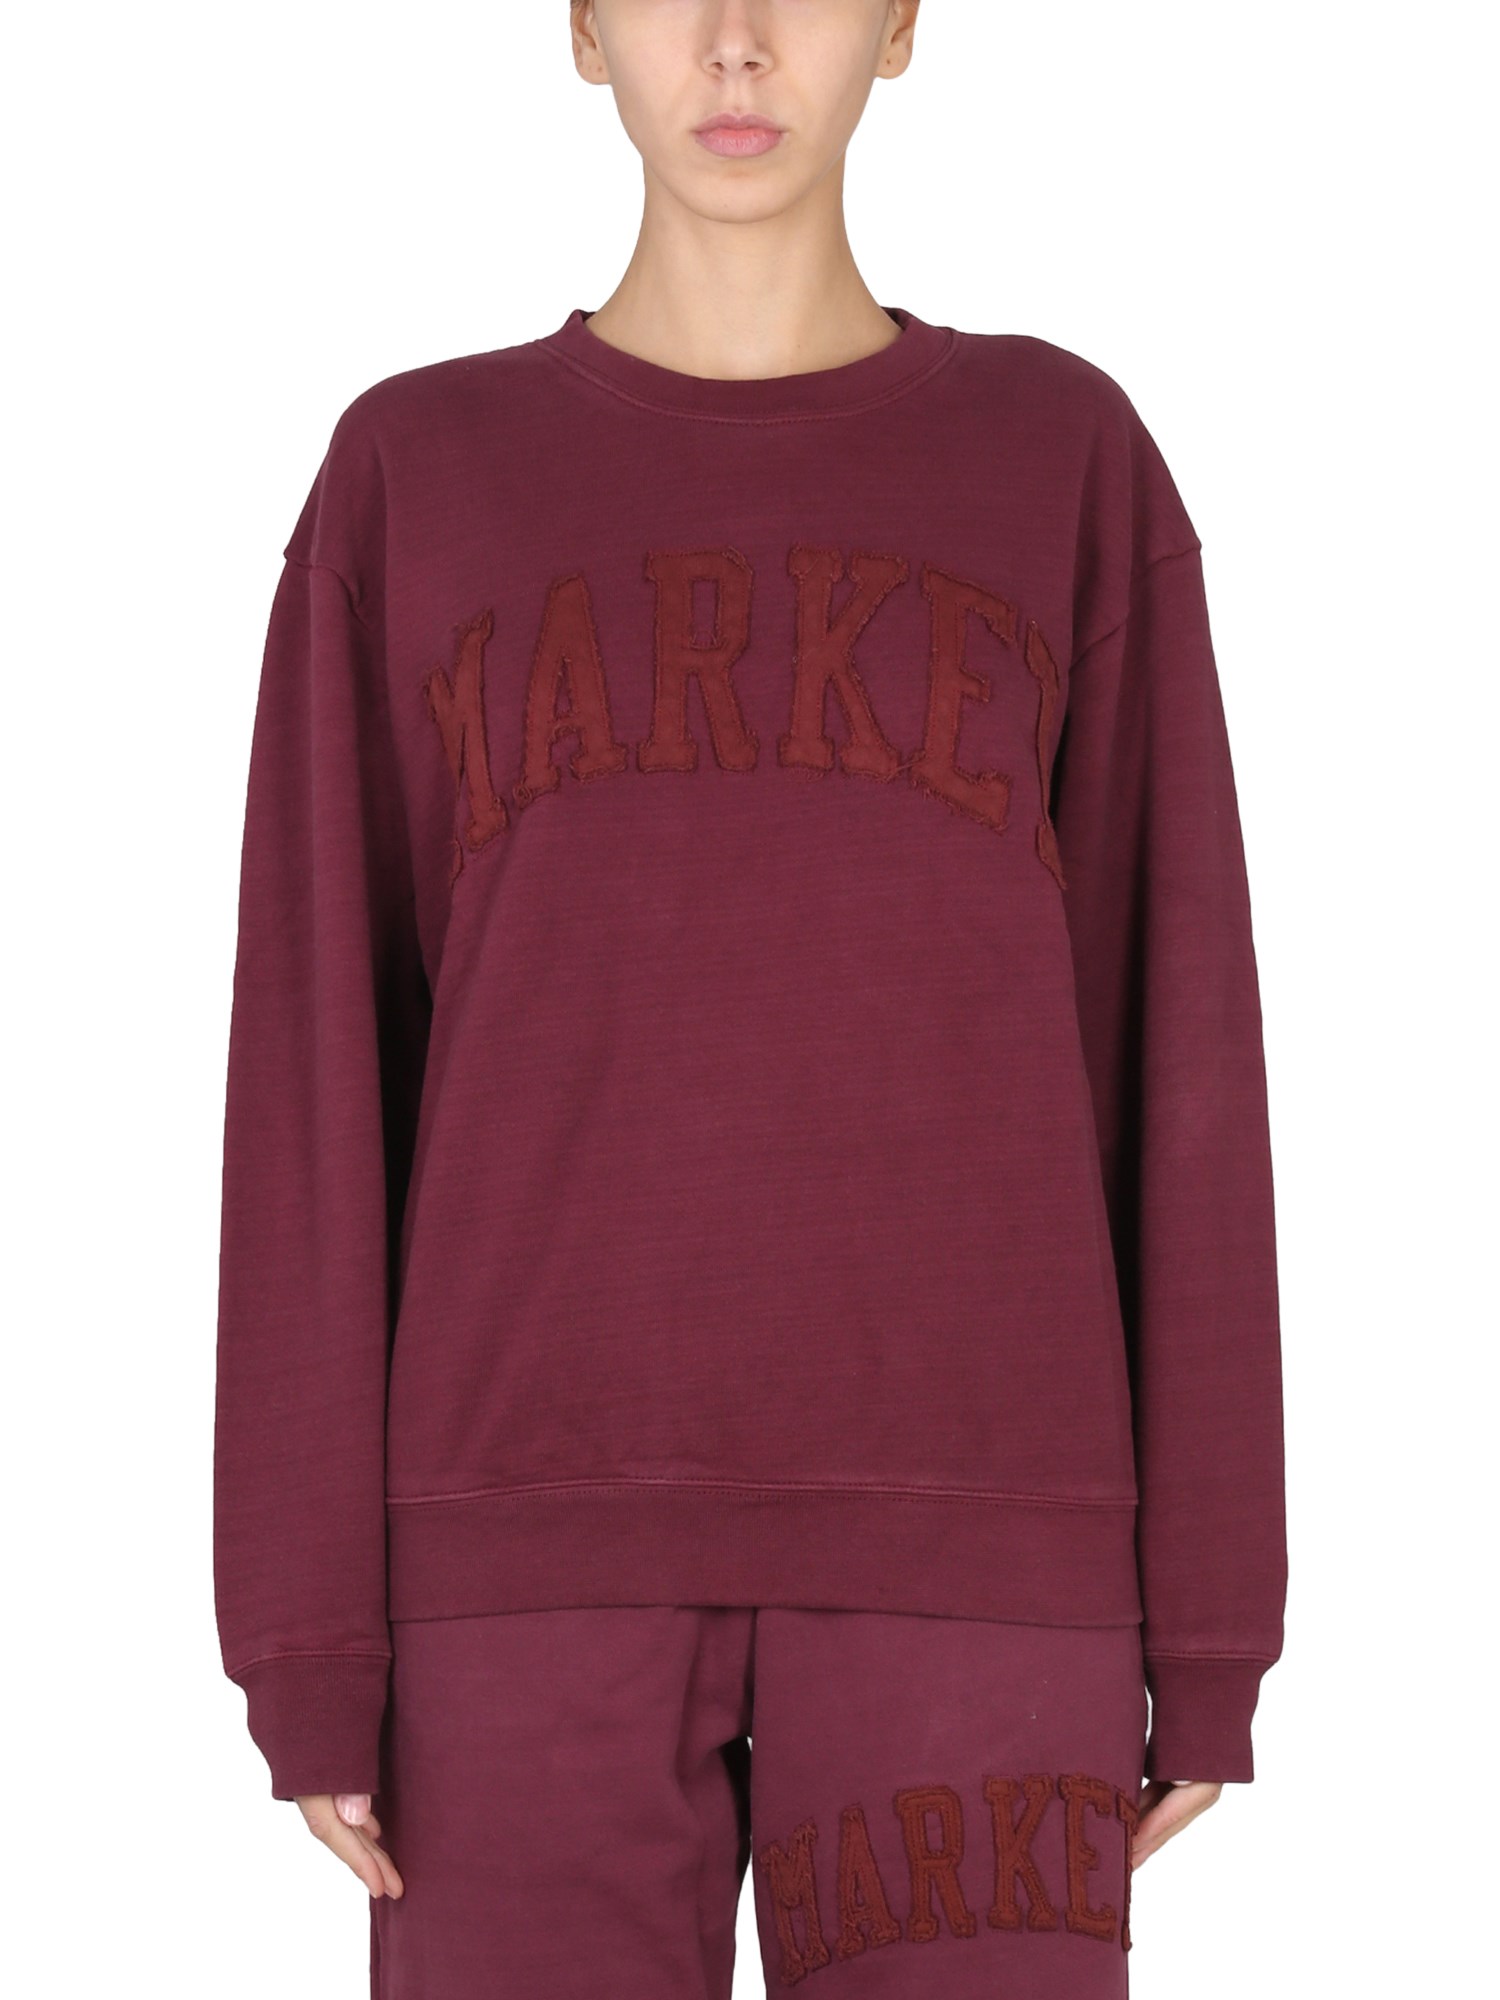 market market vintage wash sweatshirt